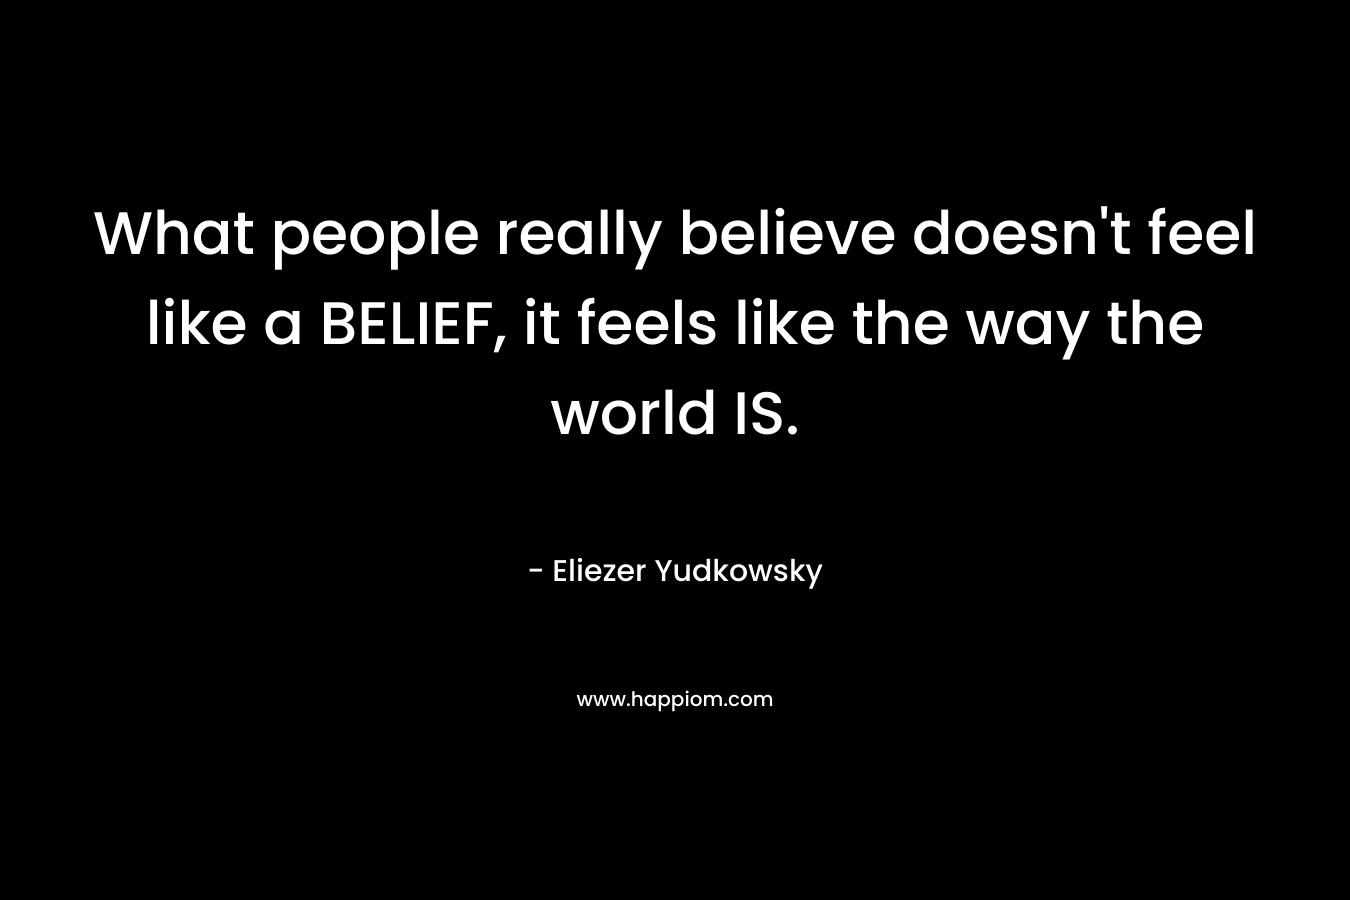 What people really believe doesn’t feel like a BELIEF, it feels like the way the world IS. – Eliezer Yudkowsky